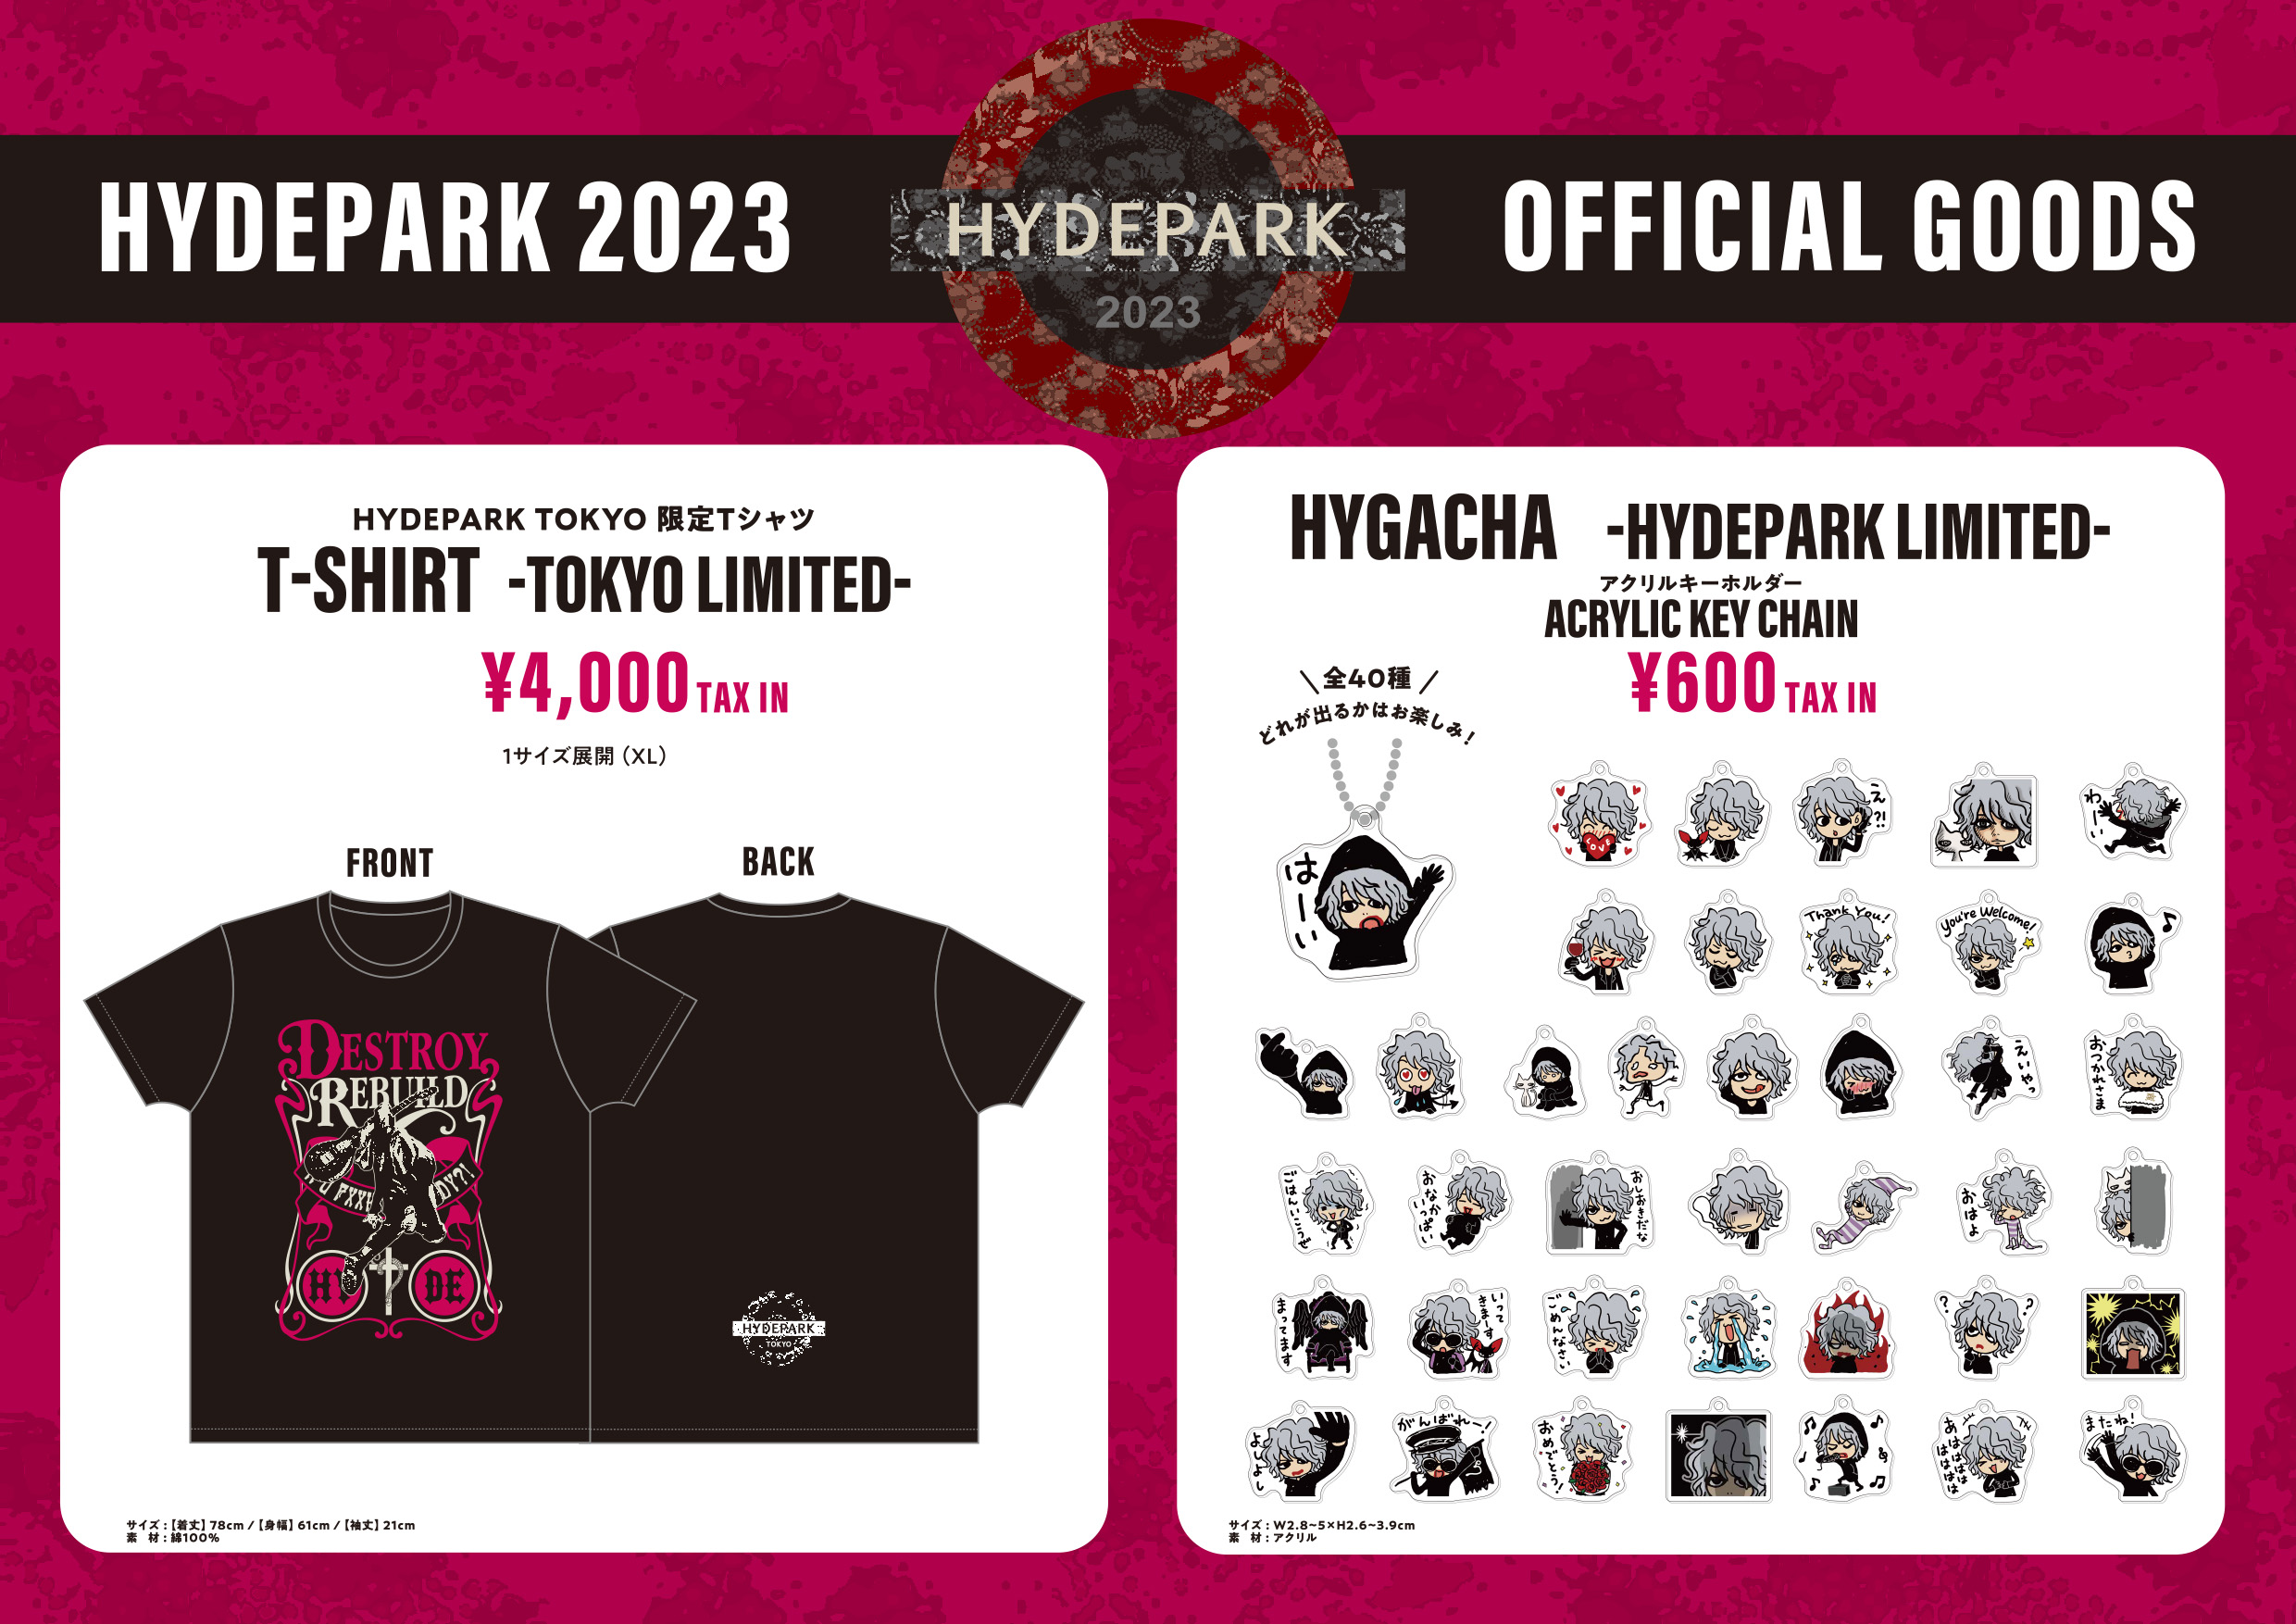 Hyde on X: "[STAFF] 「HYDEPARK 2023」 にて販売するグッズを公開